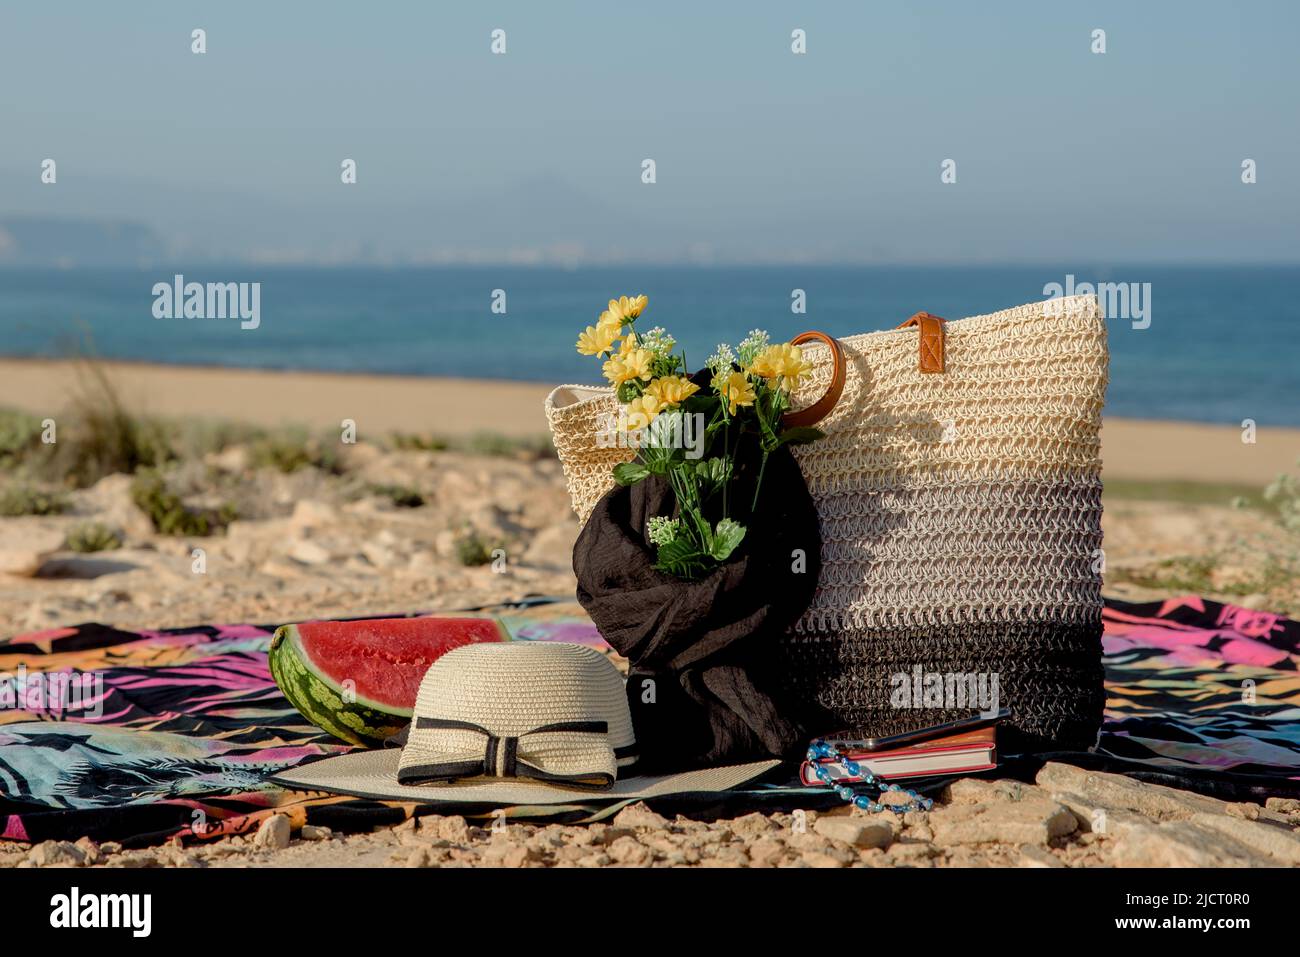 accessoires de plage, sac, livre, foulard, fleurs, chapeau, produits Banque D'Images